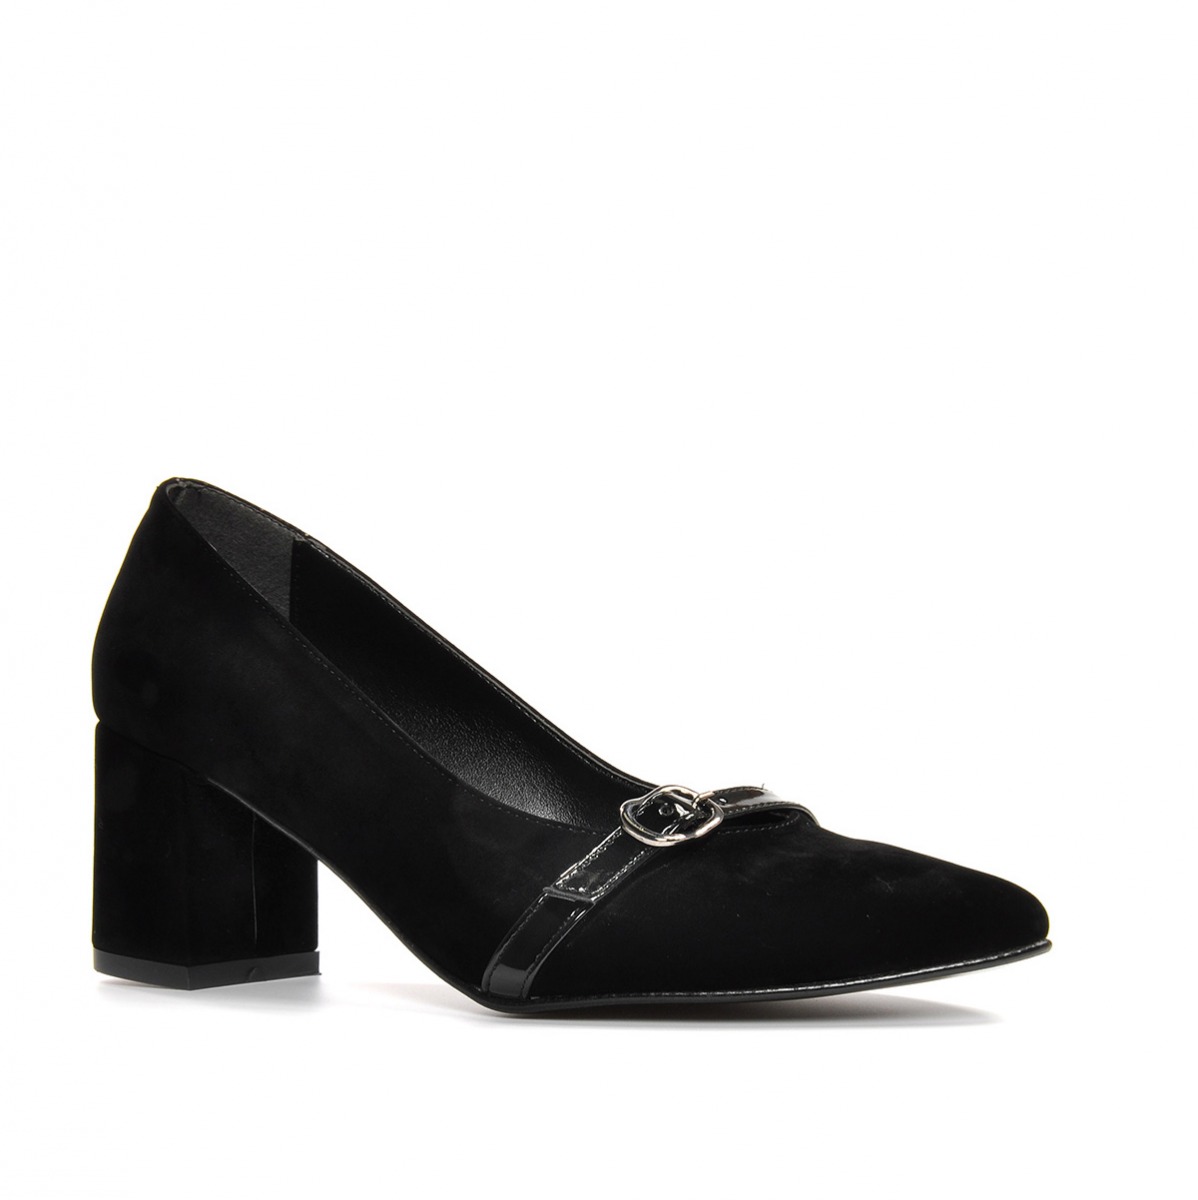 Flo Kadın  Siyah-Süet Klasik Topuklu Ayakkabı VZN19-110K. 4